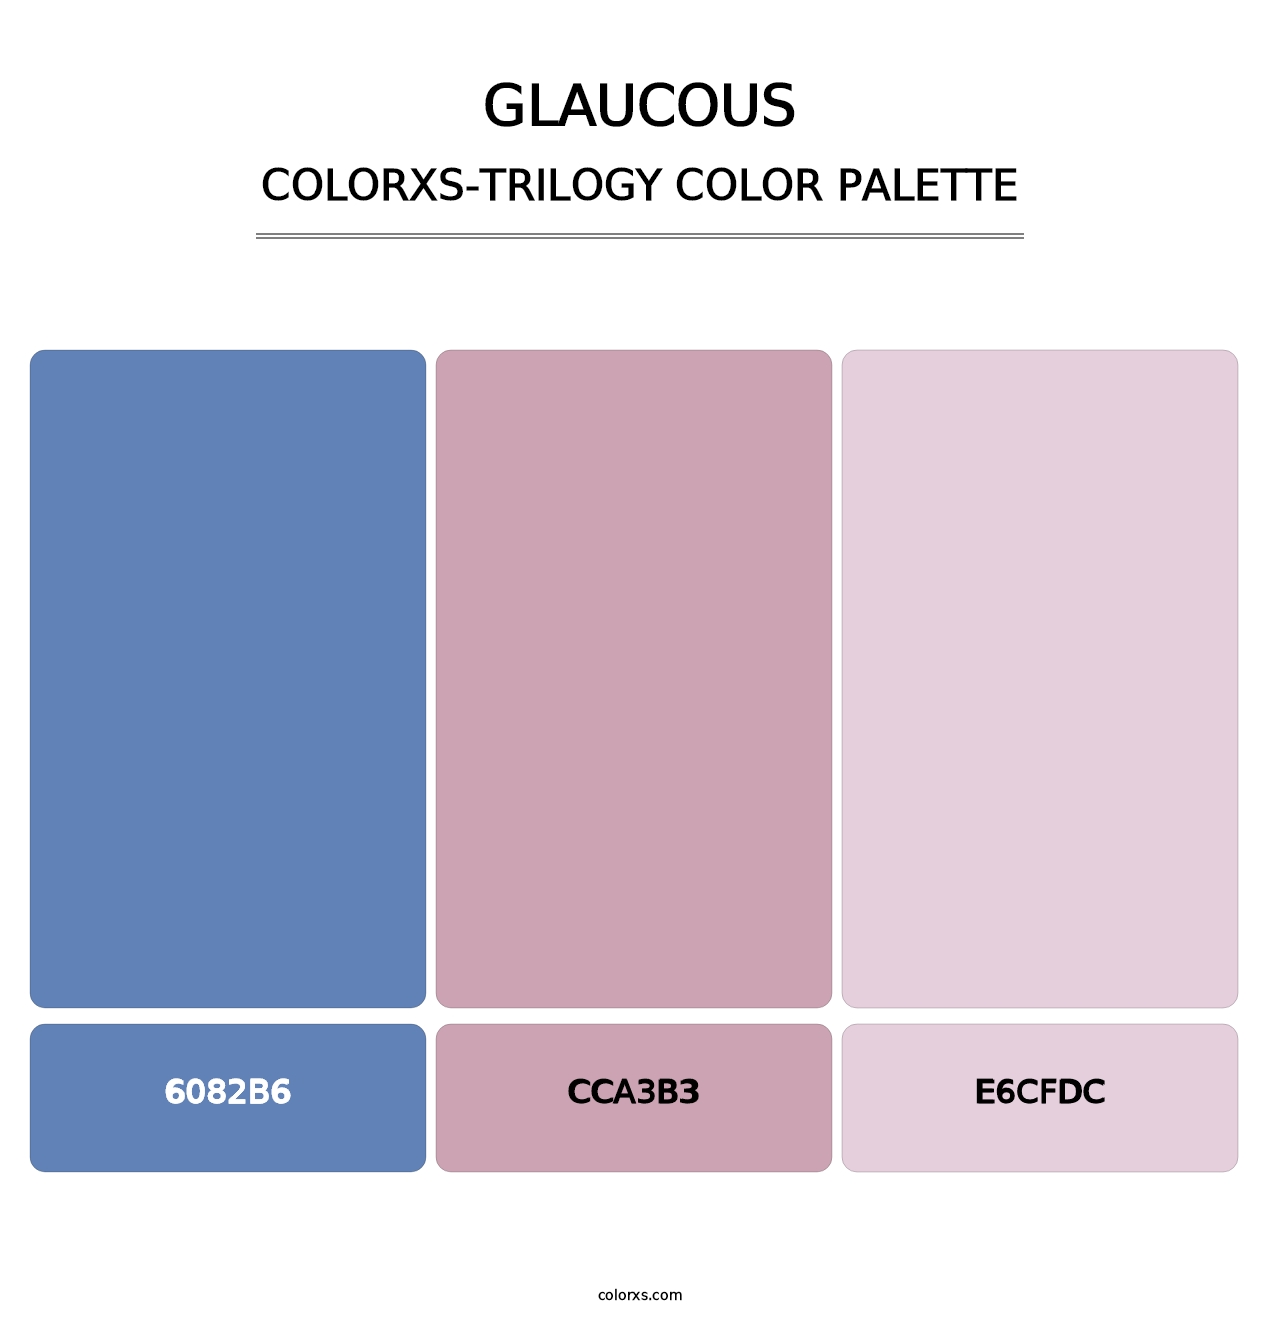 Glaucous - Colorxs Trilogy Palette